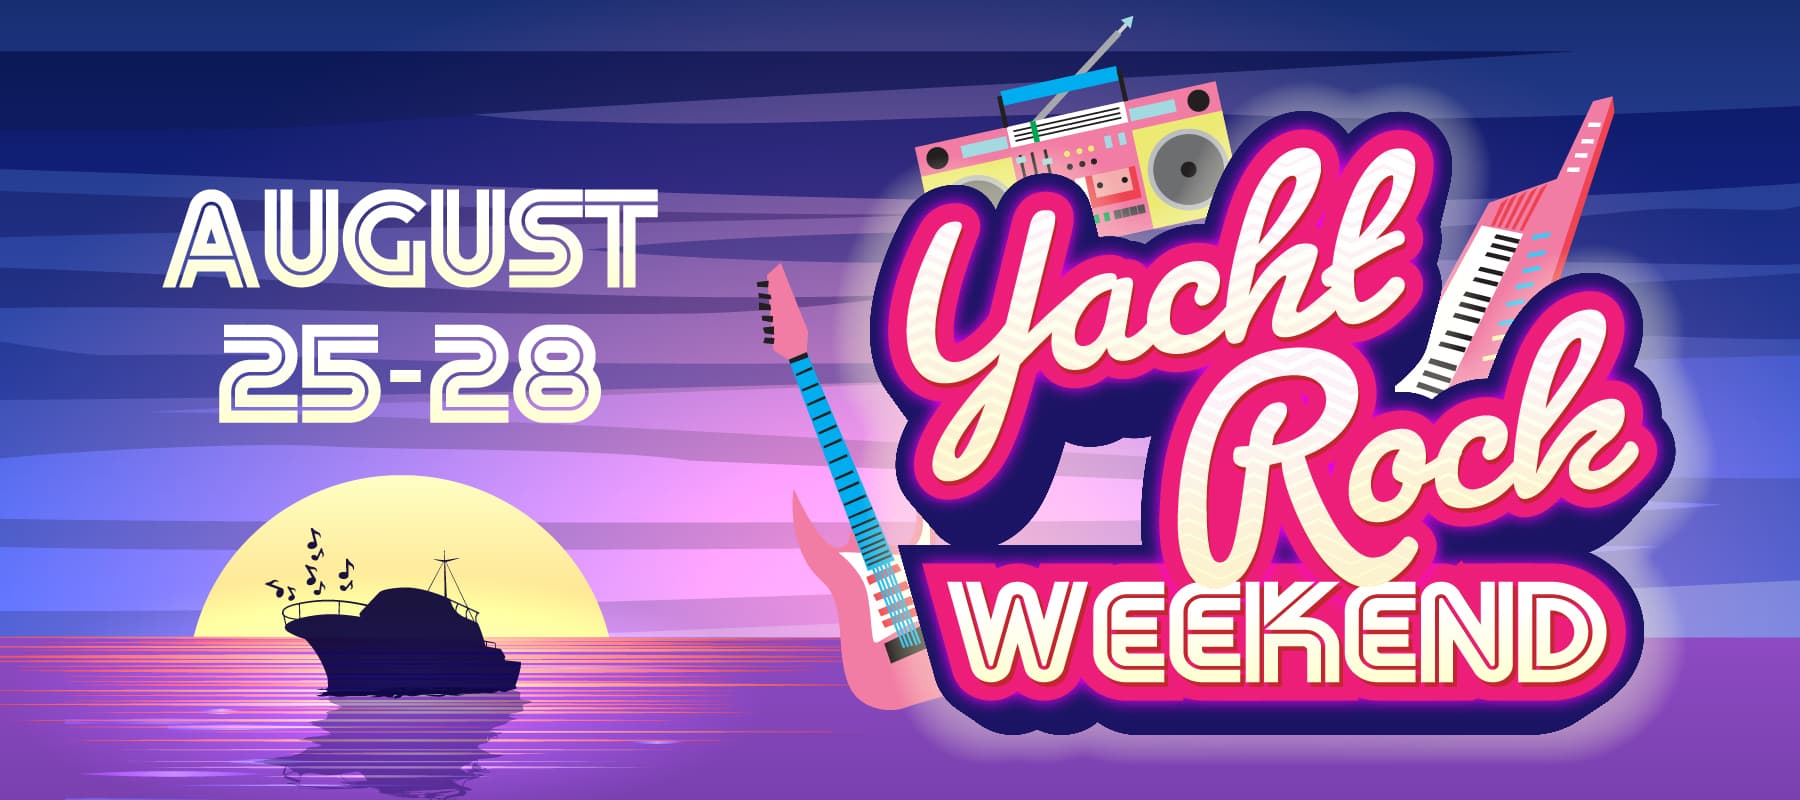 yacht rock weekend august 25-28